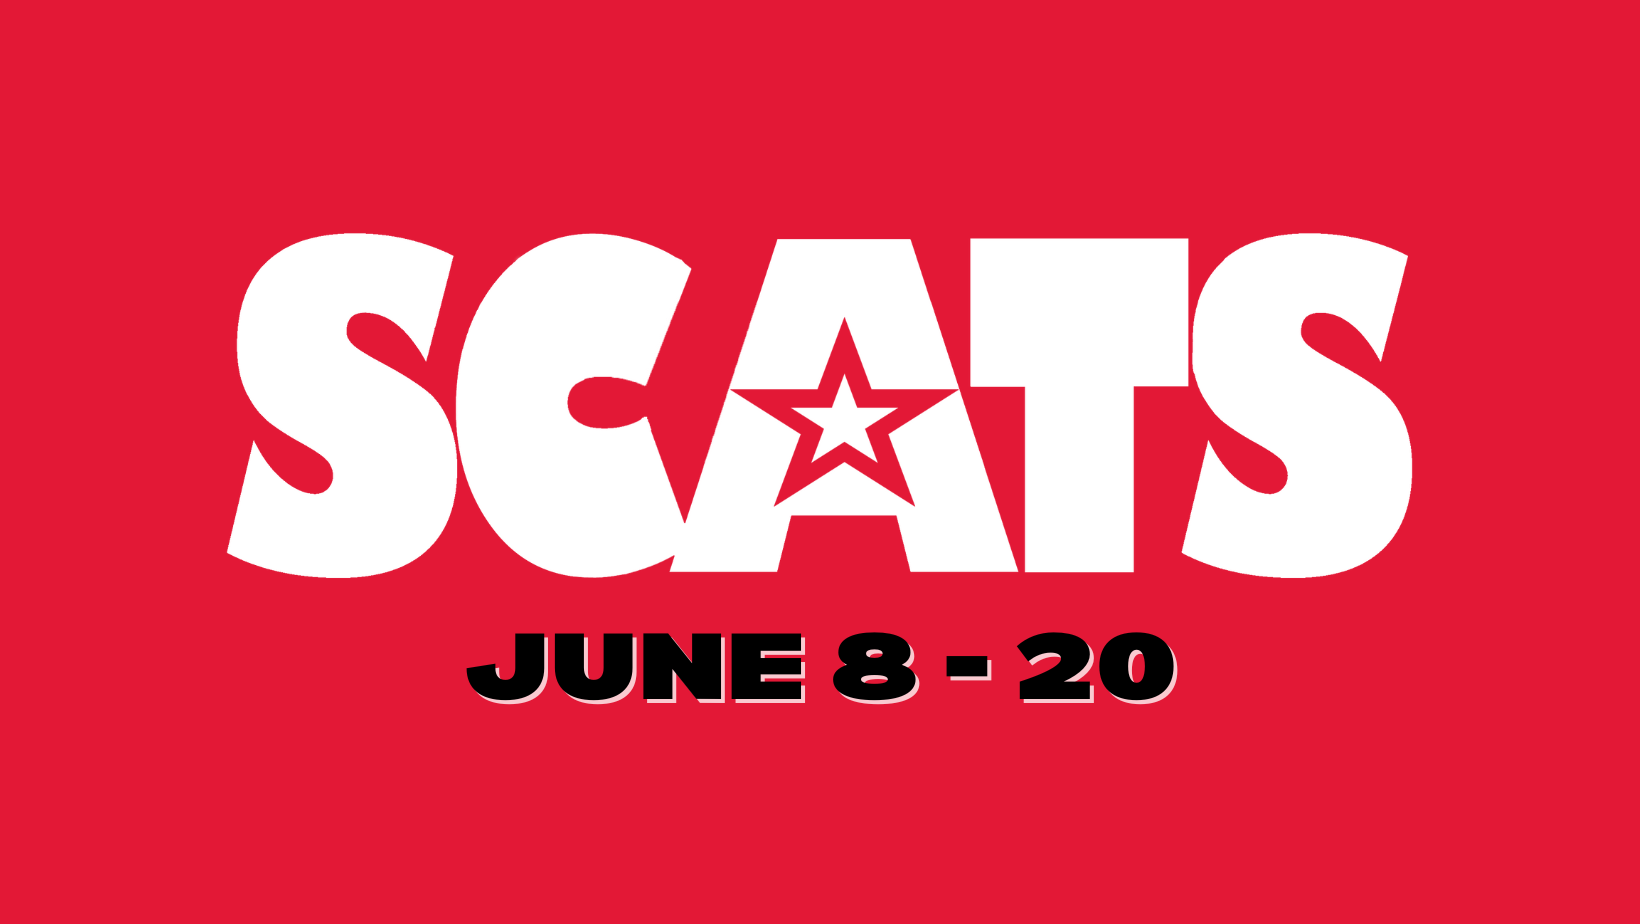 scats 2025 june 8-20